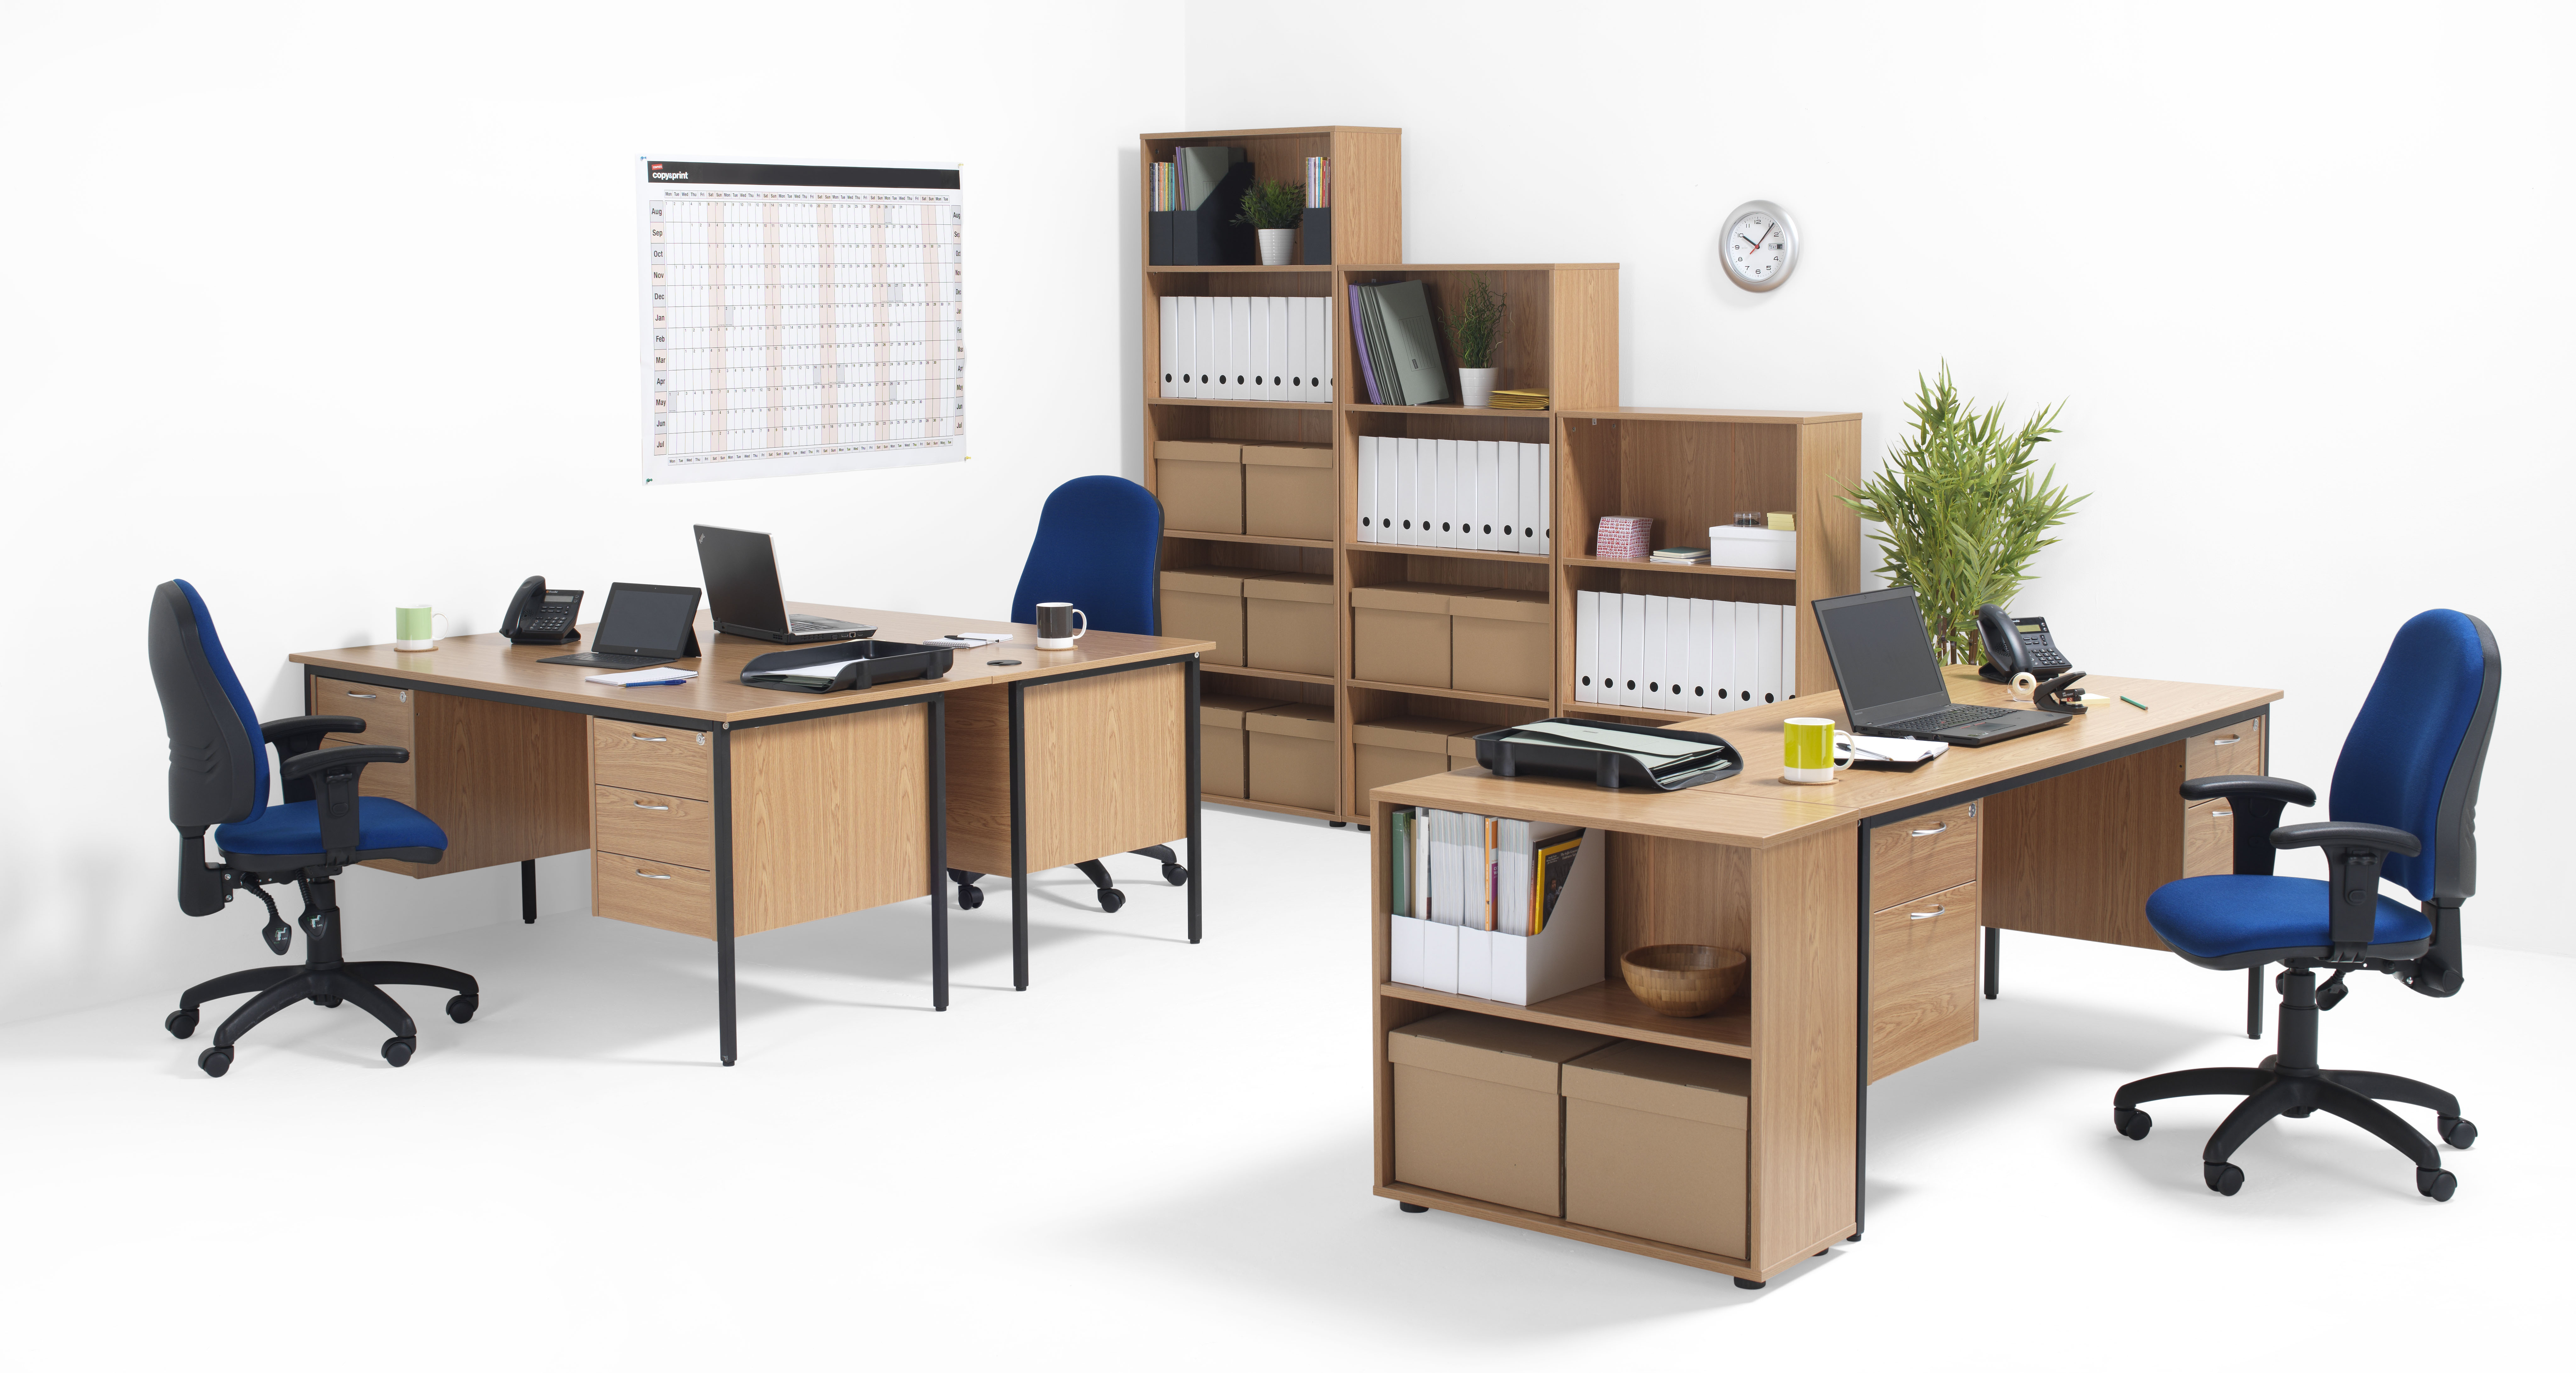 производство мебели для офисов и предприятий торговли оквэд 2